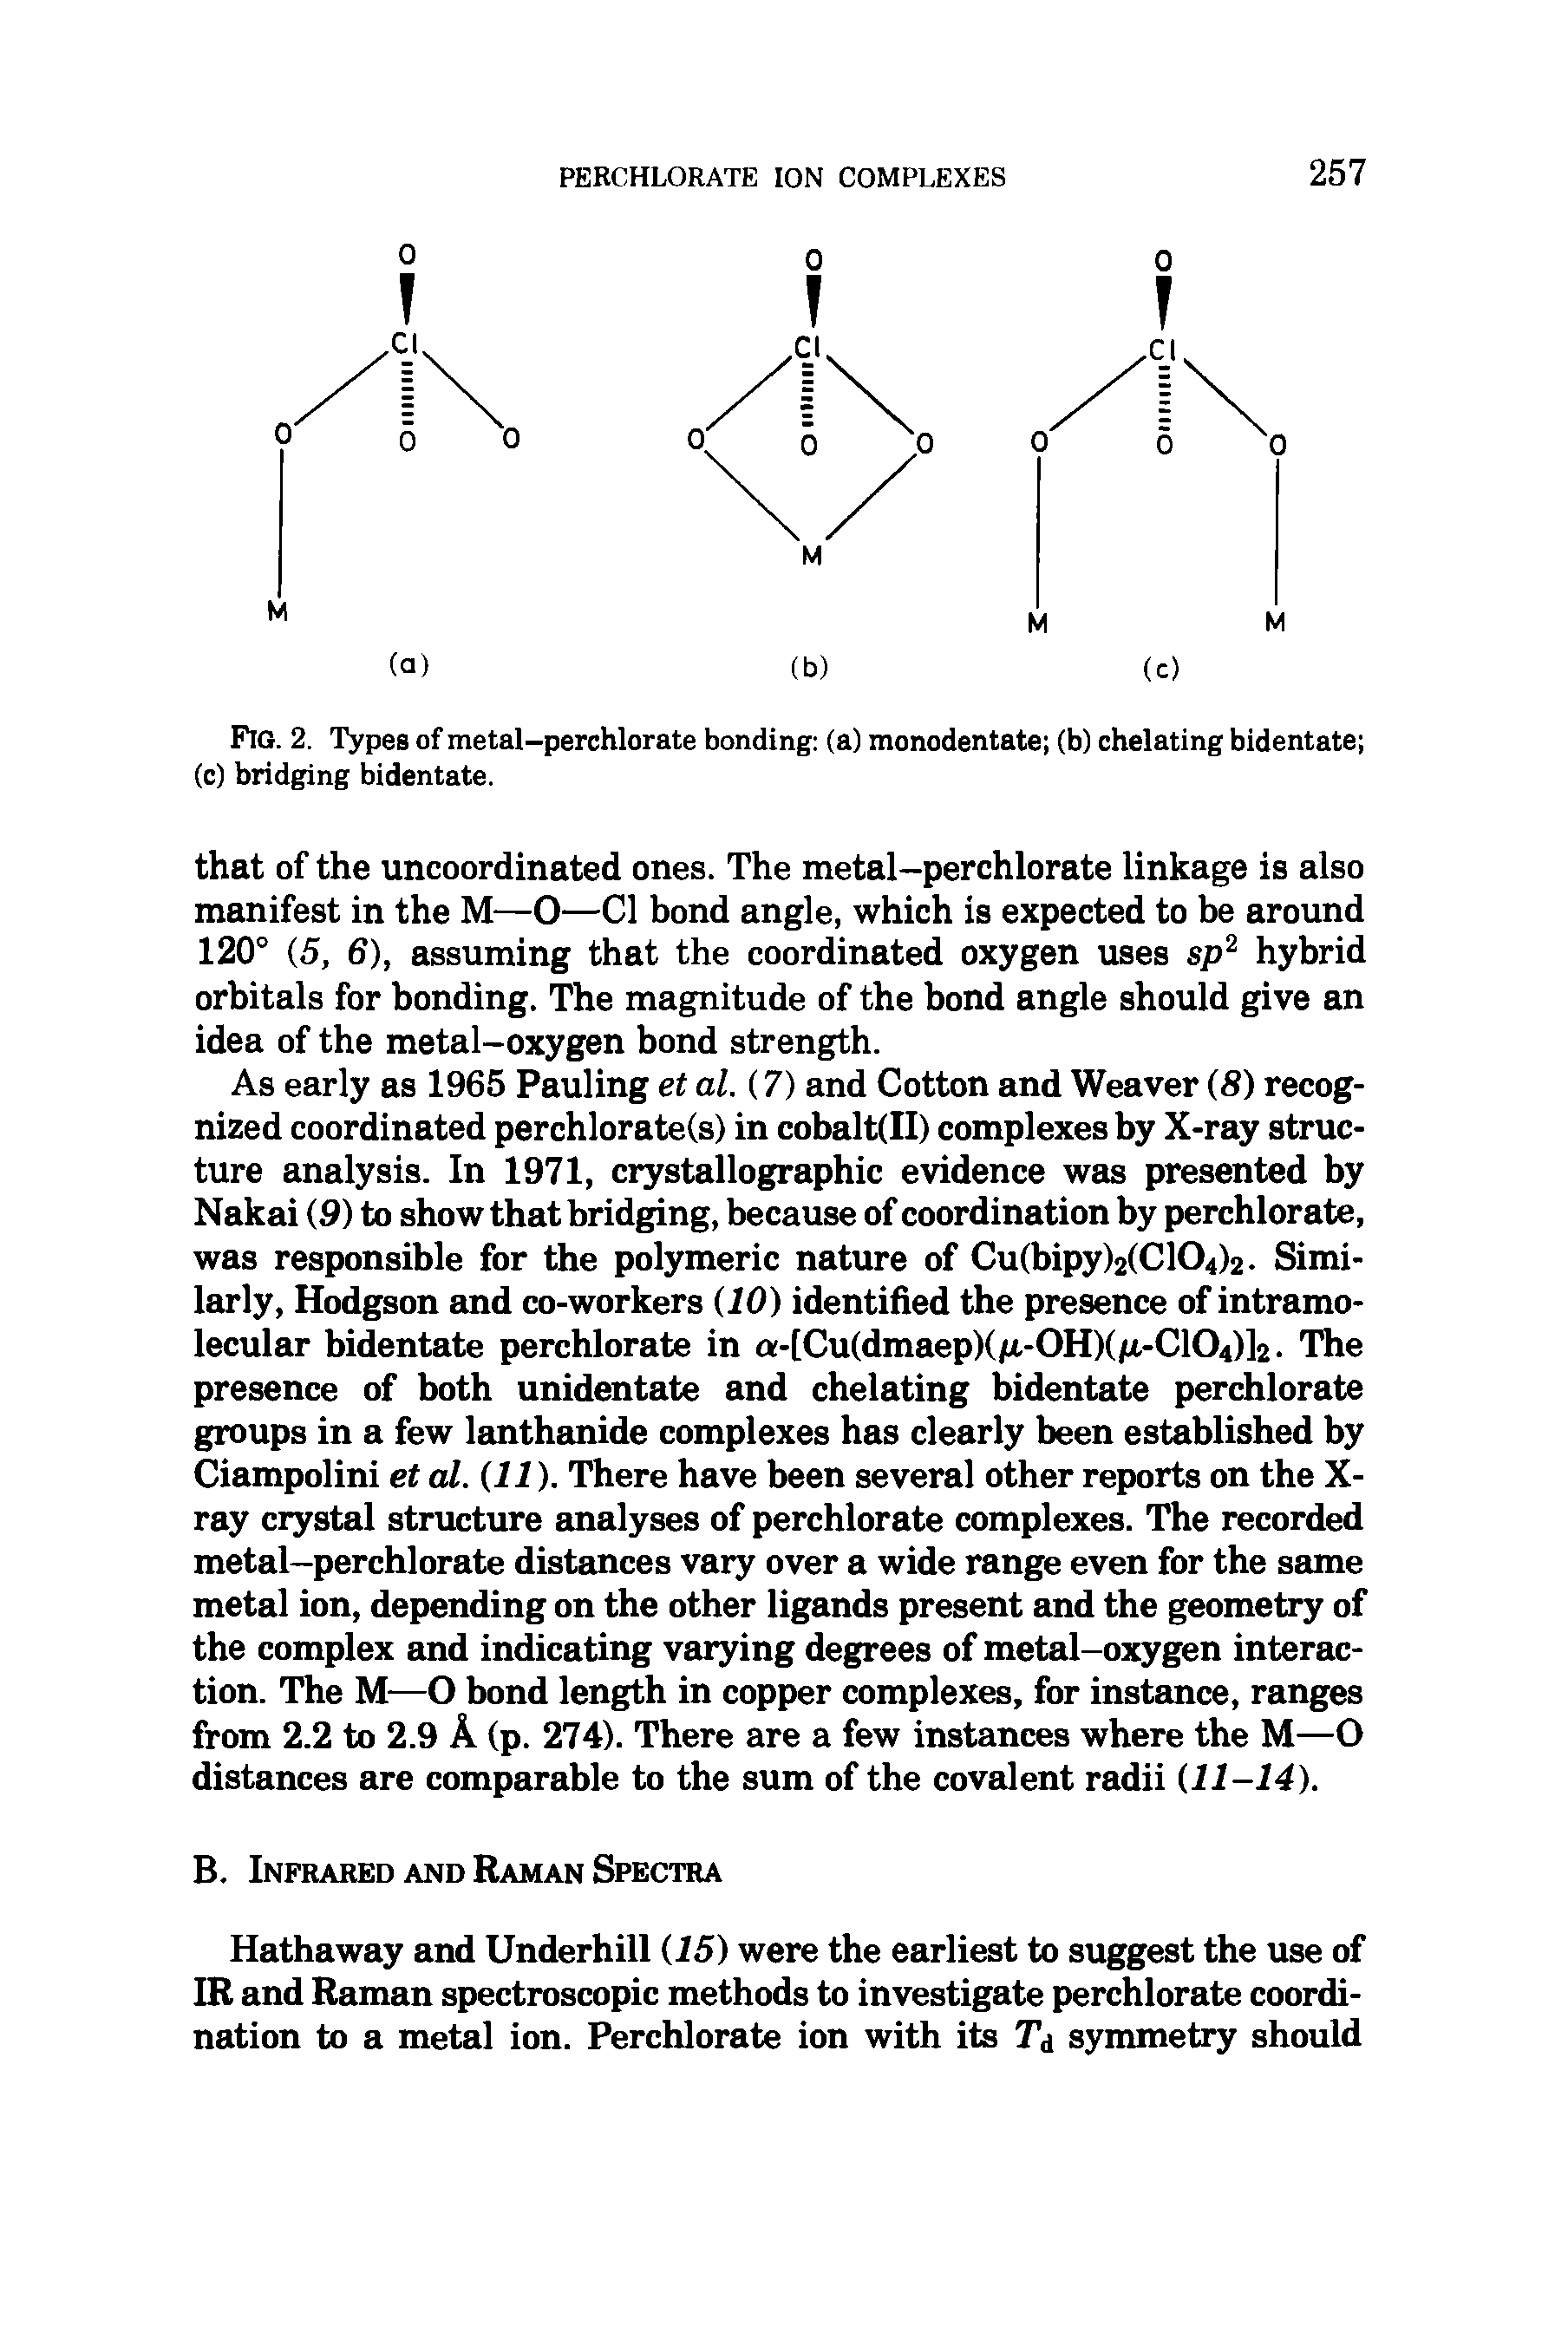 Fig. 2. Types of metal-perchlorate bonding (a) monodentate (b) chelating bidentate (c) bridging bidentate.